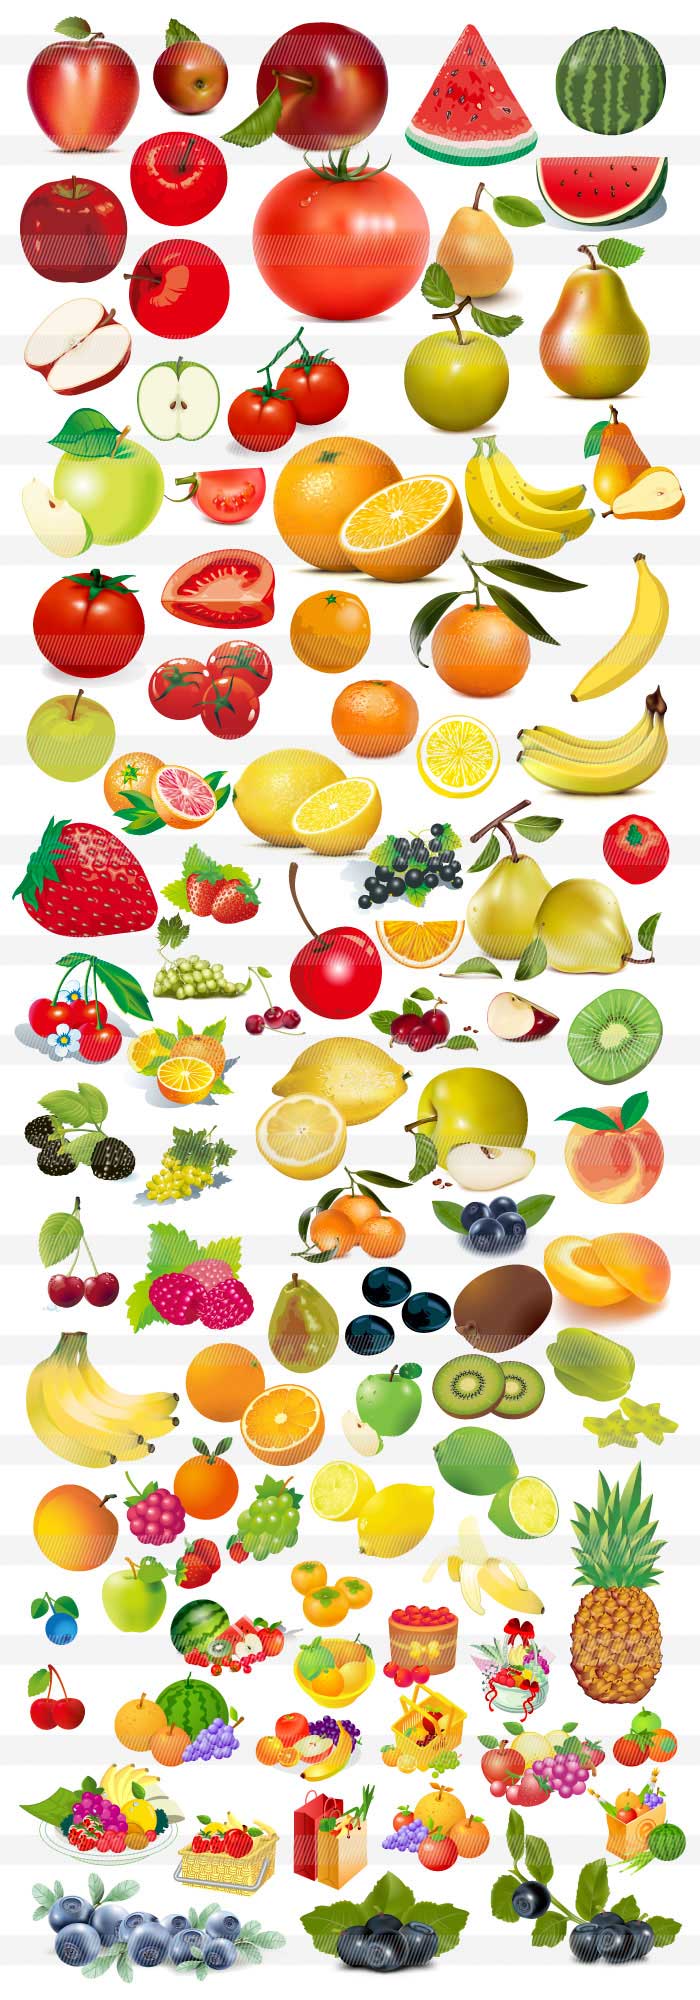 果物フルーツのイラスト